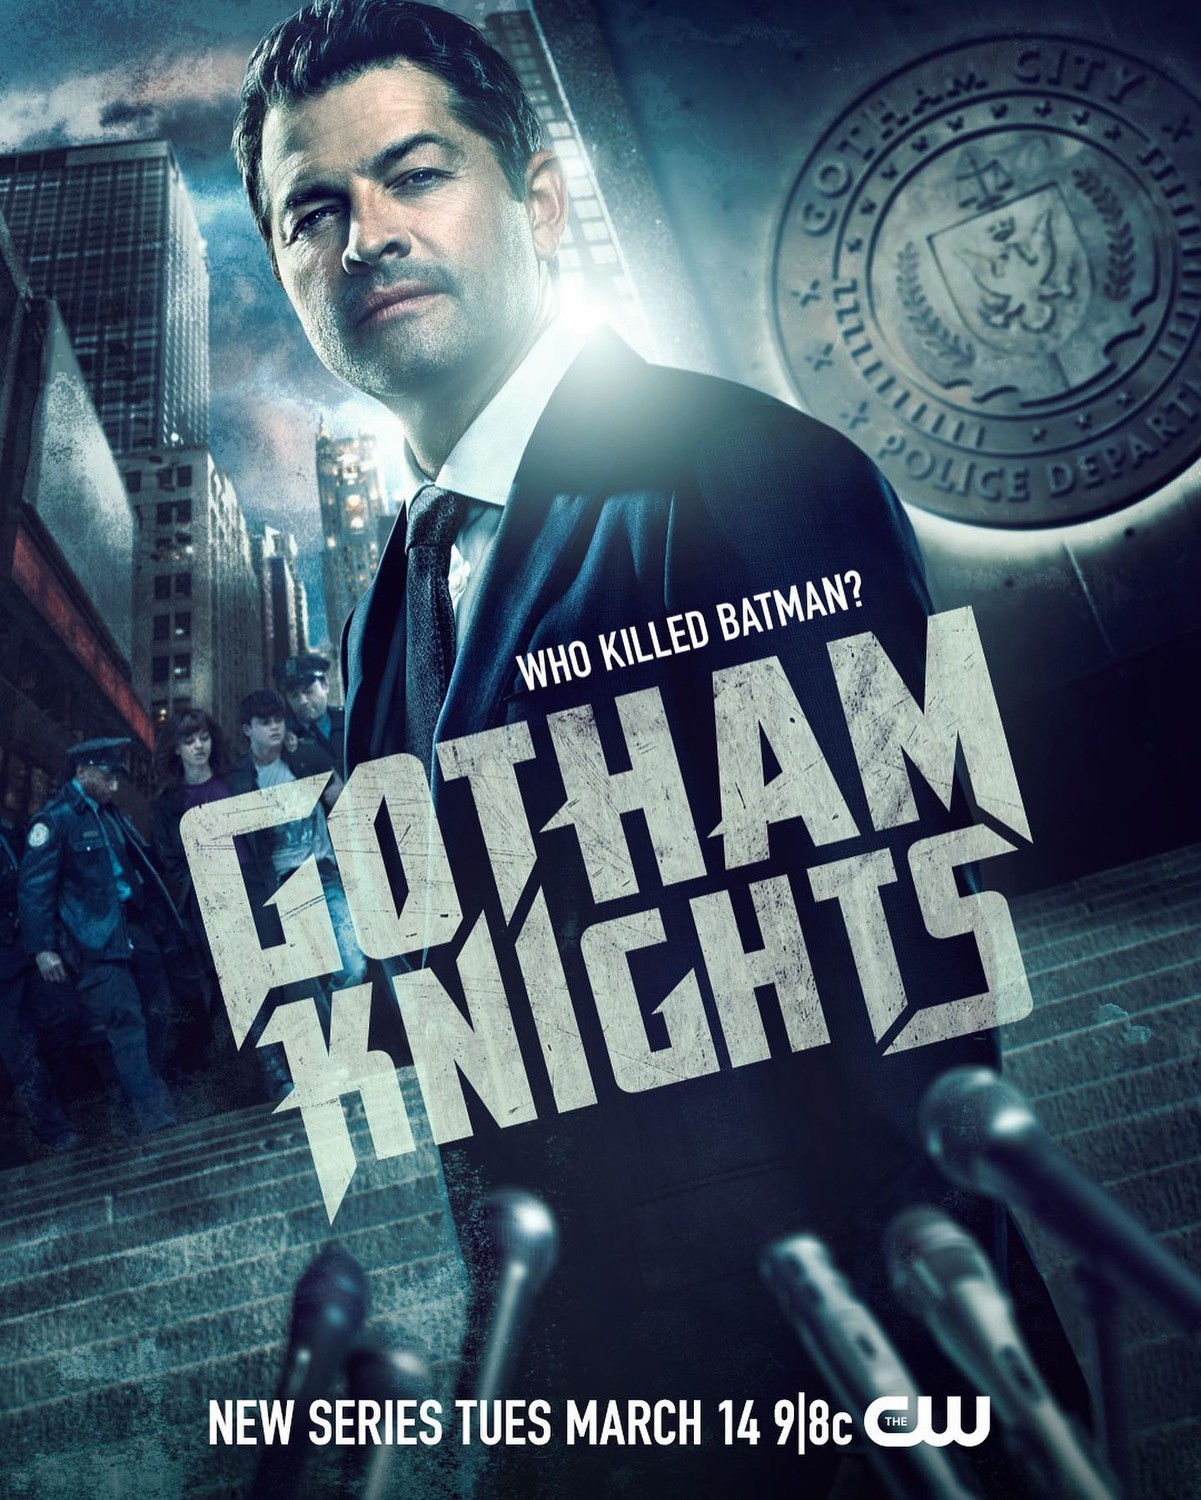 Рыцари Готэма / Gotham Knights